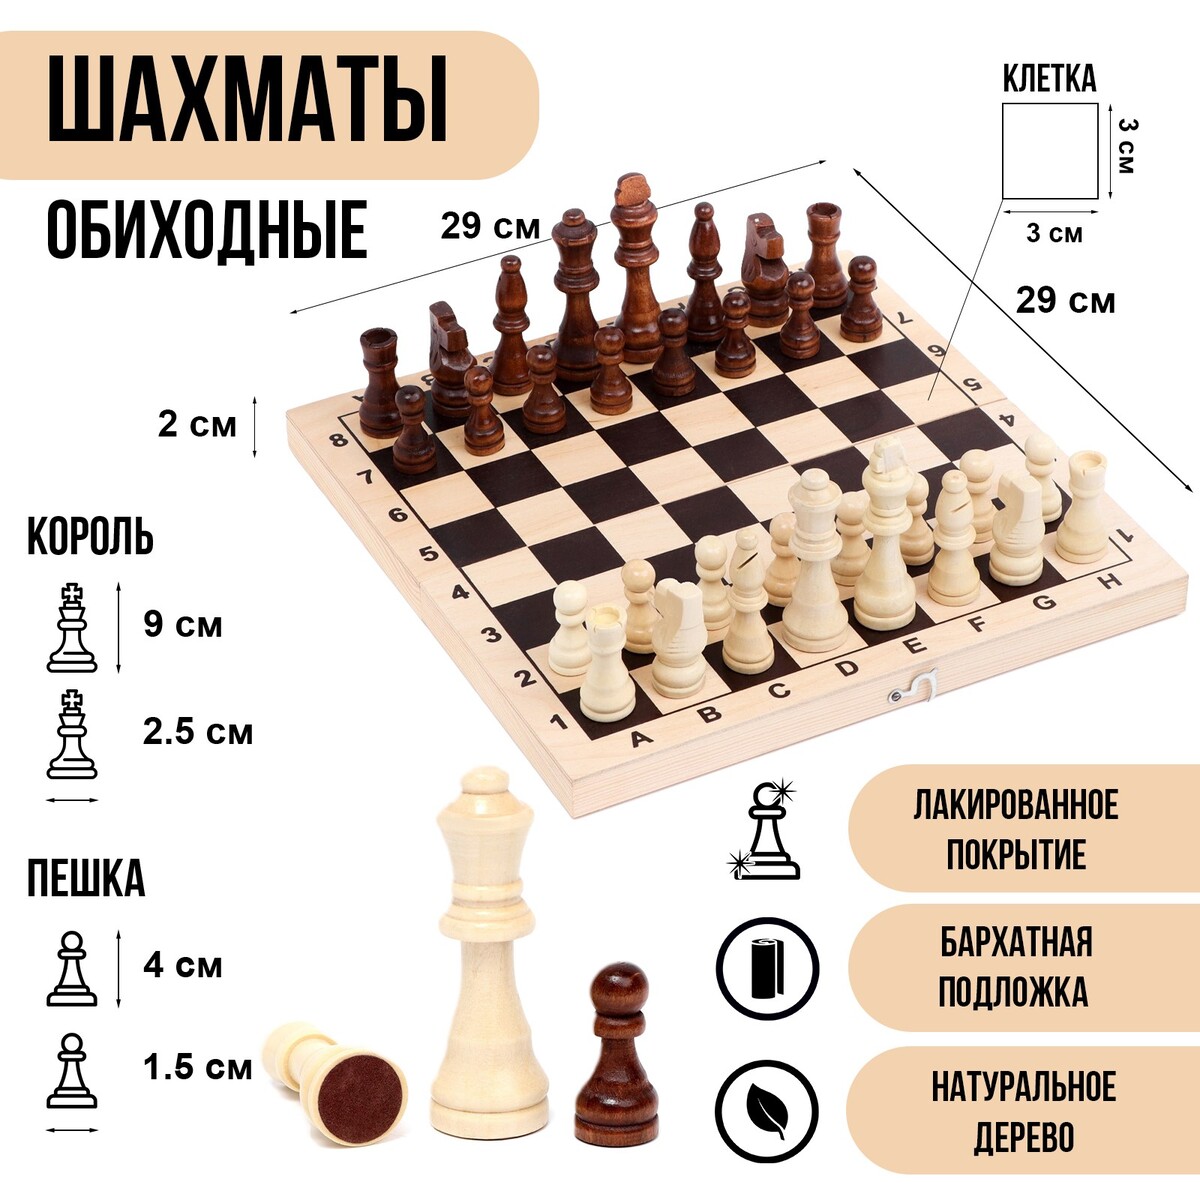 Шахматы деревянные обиходные 29 х 29 см, король h-9 см, пешка h-4 см шахматы обиходные 29 х 29 х 3 9 см